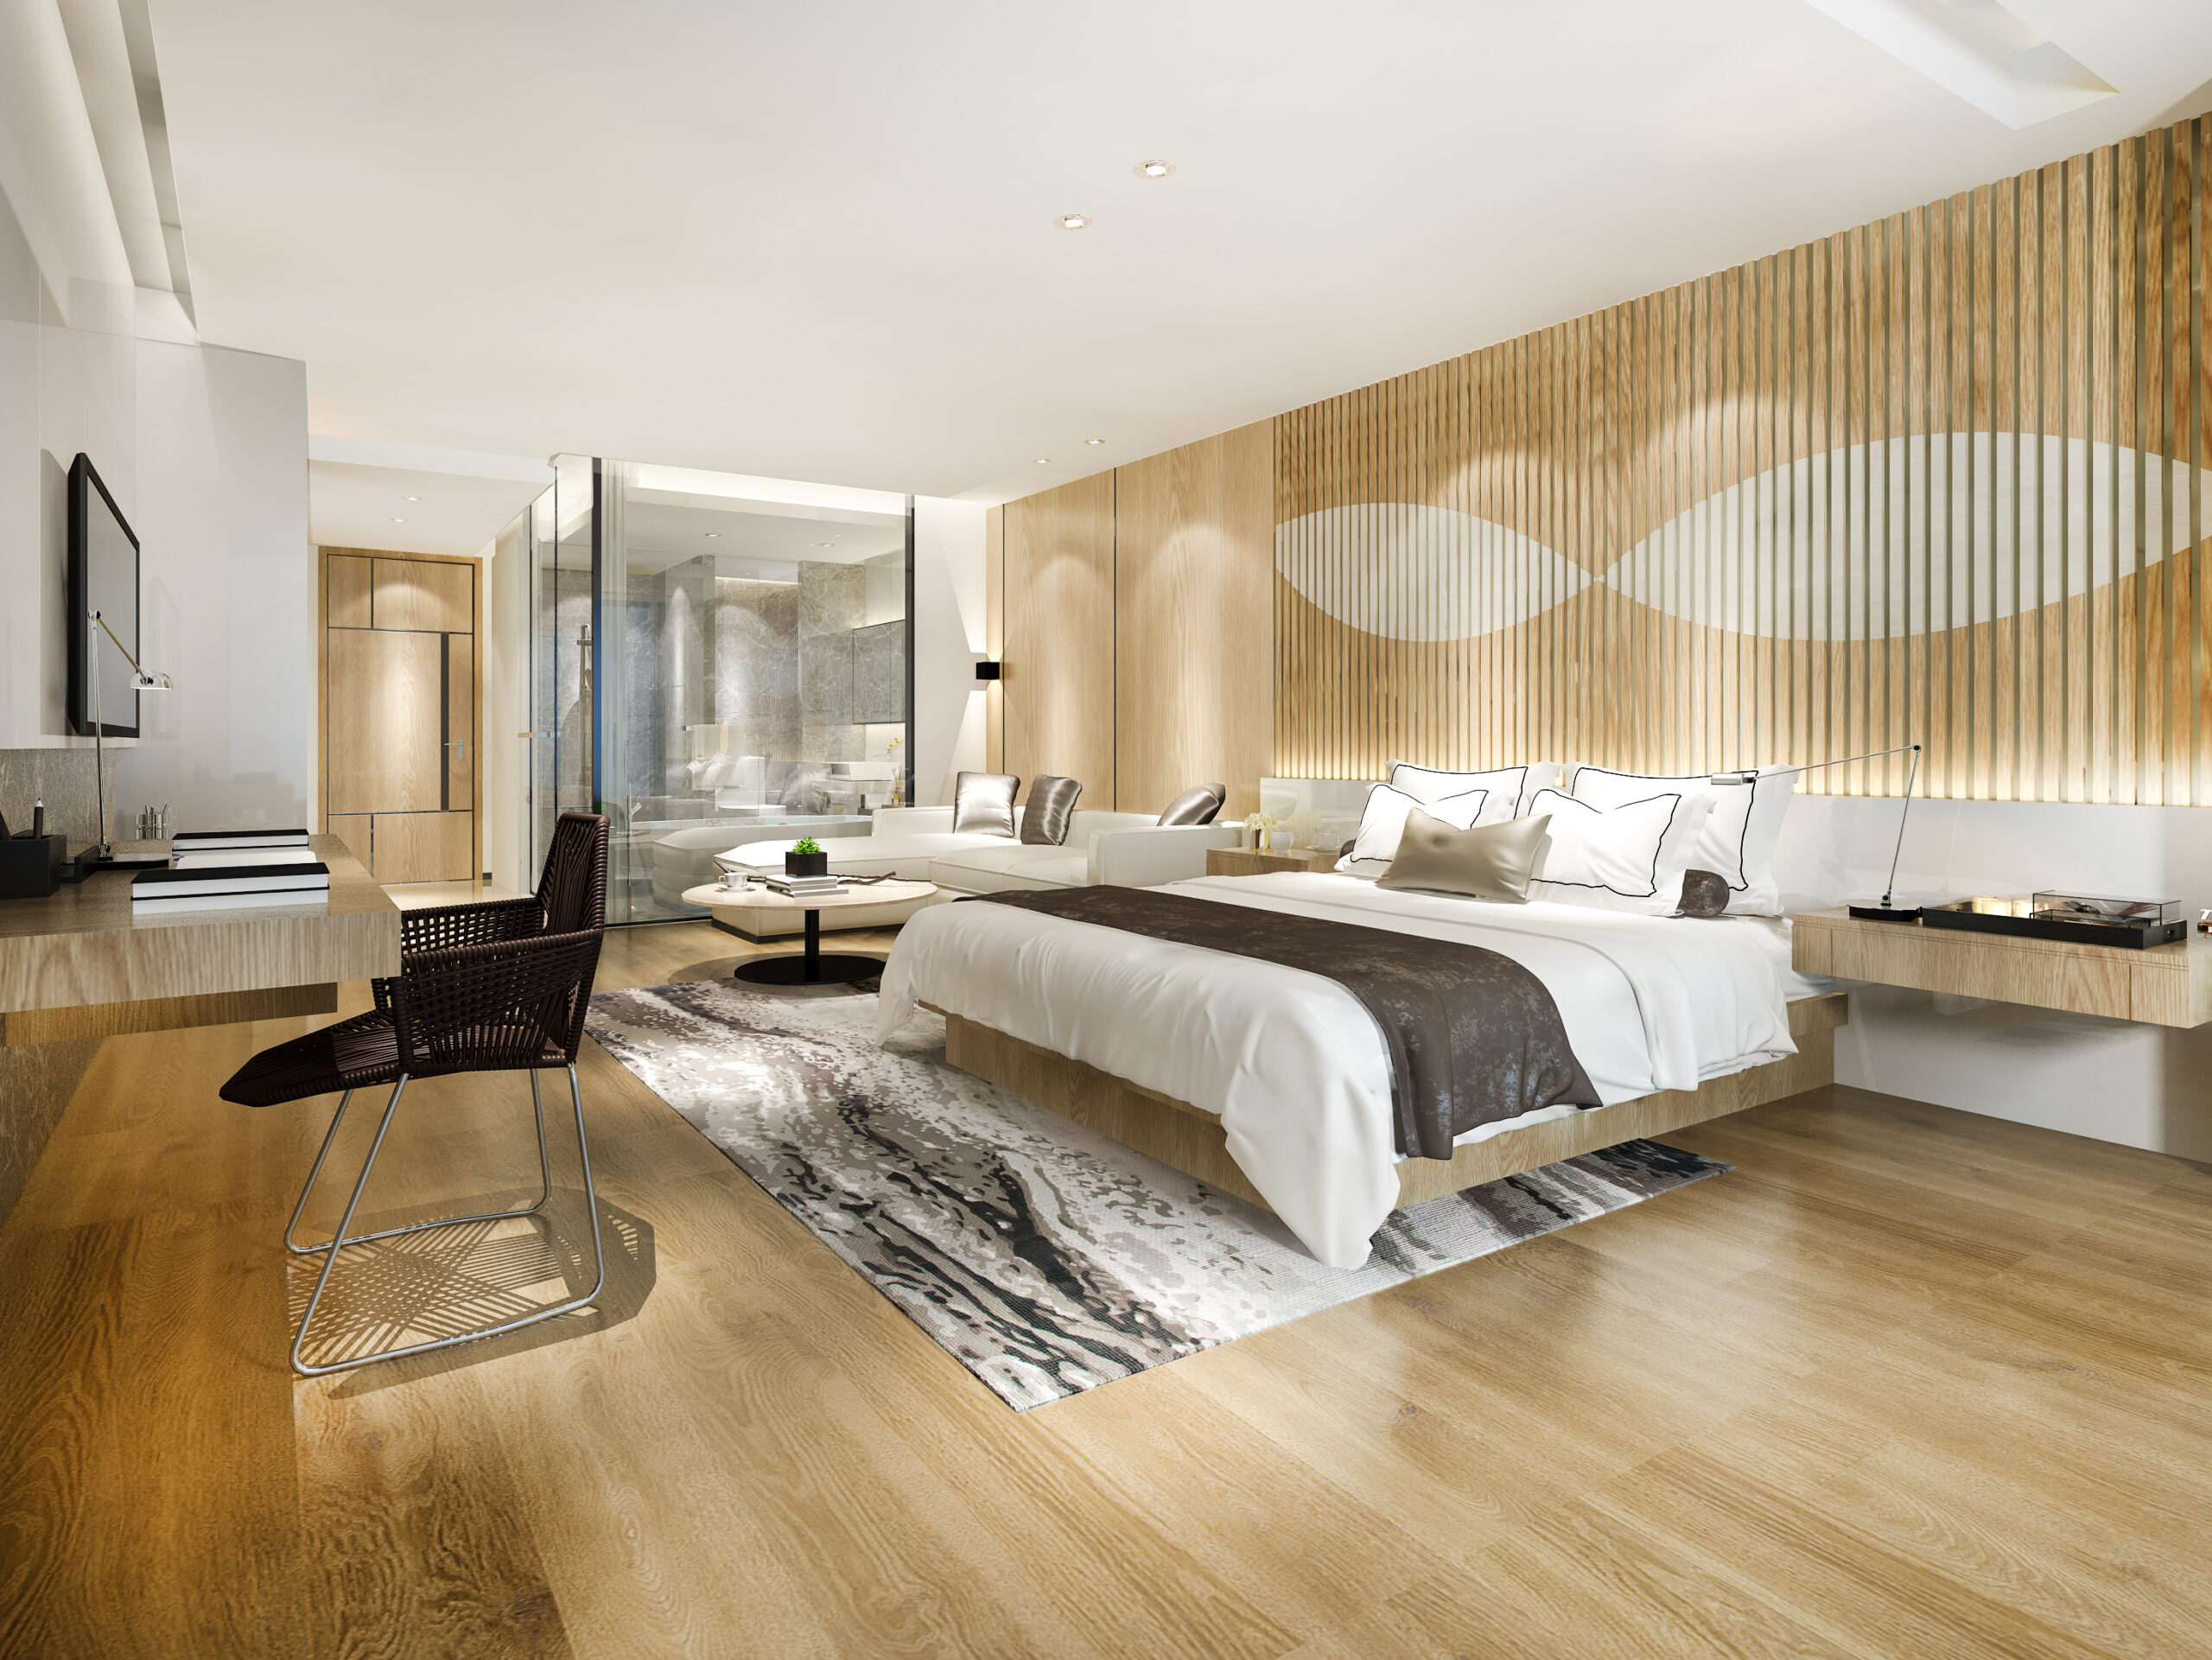 3d rendering modern luxury bedroom suite and bathroom